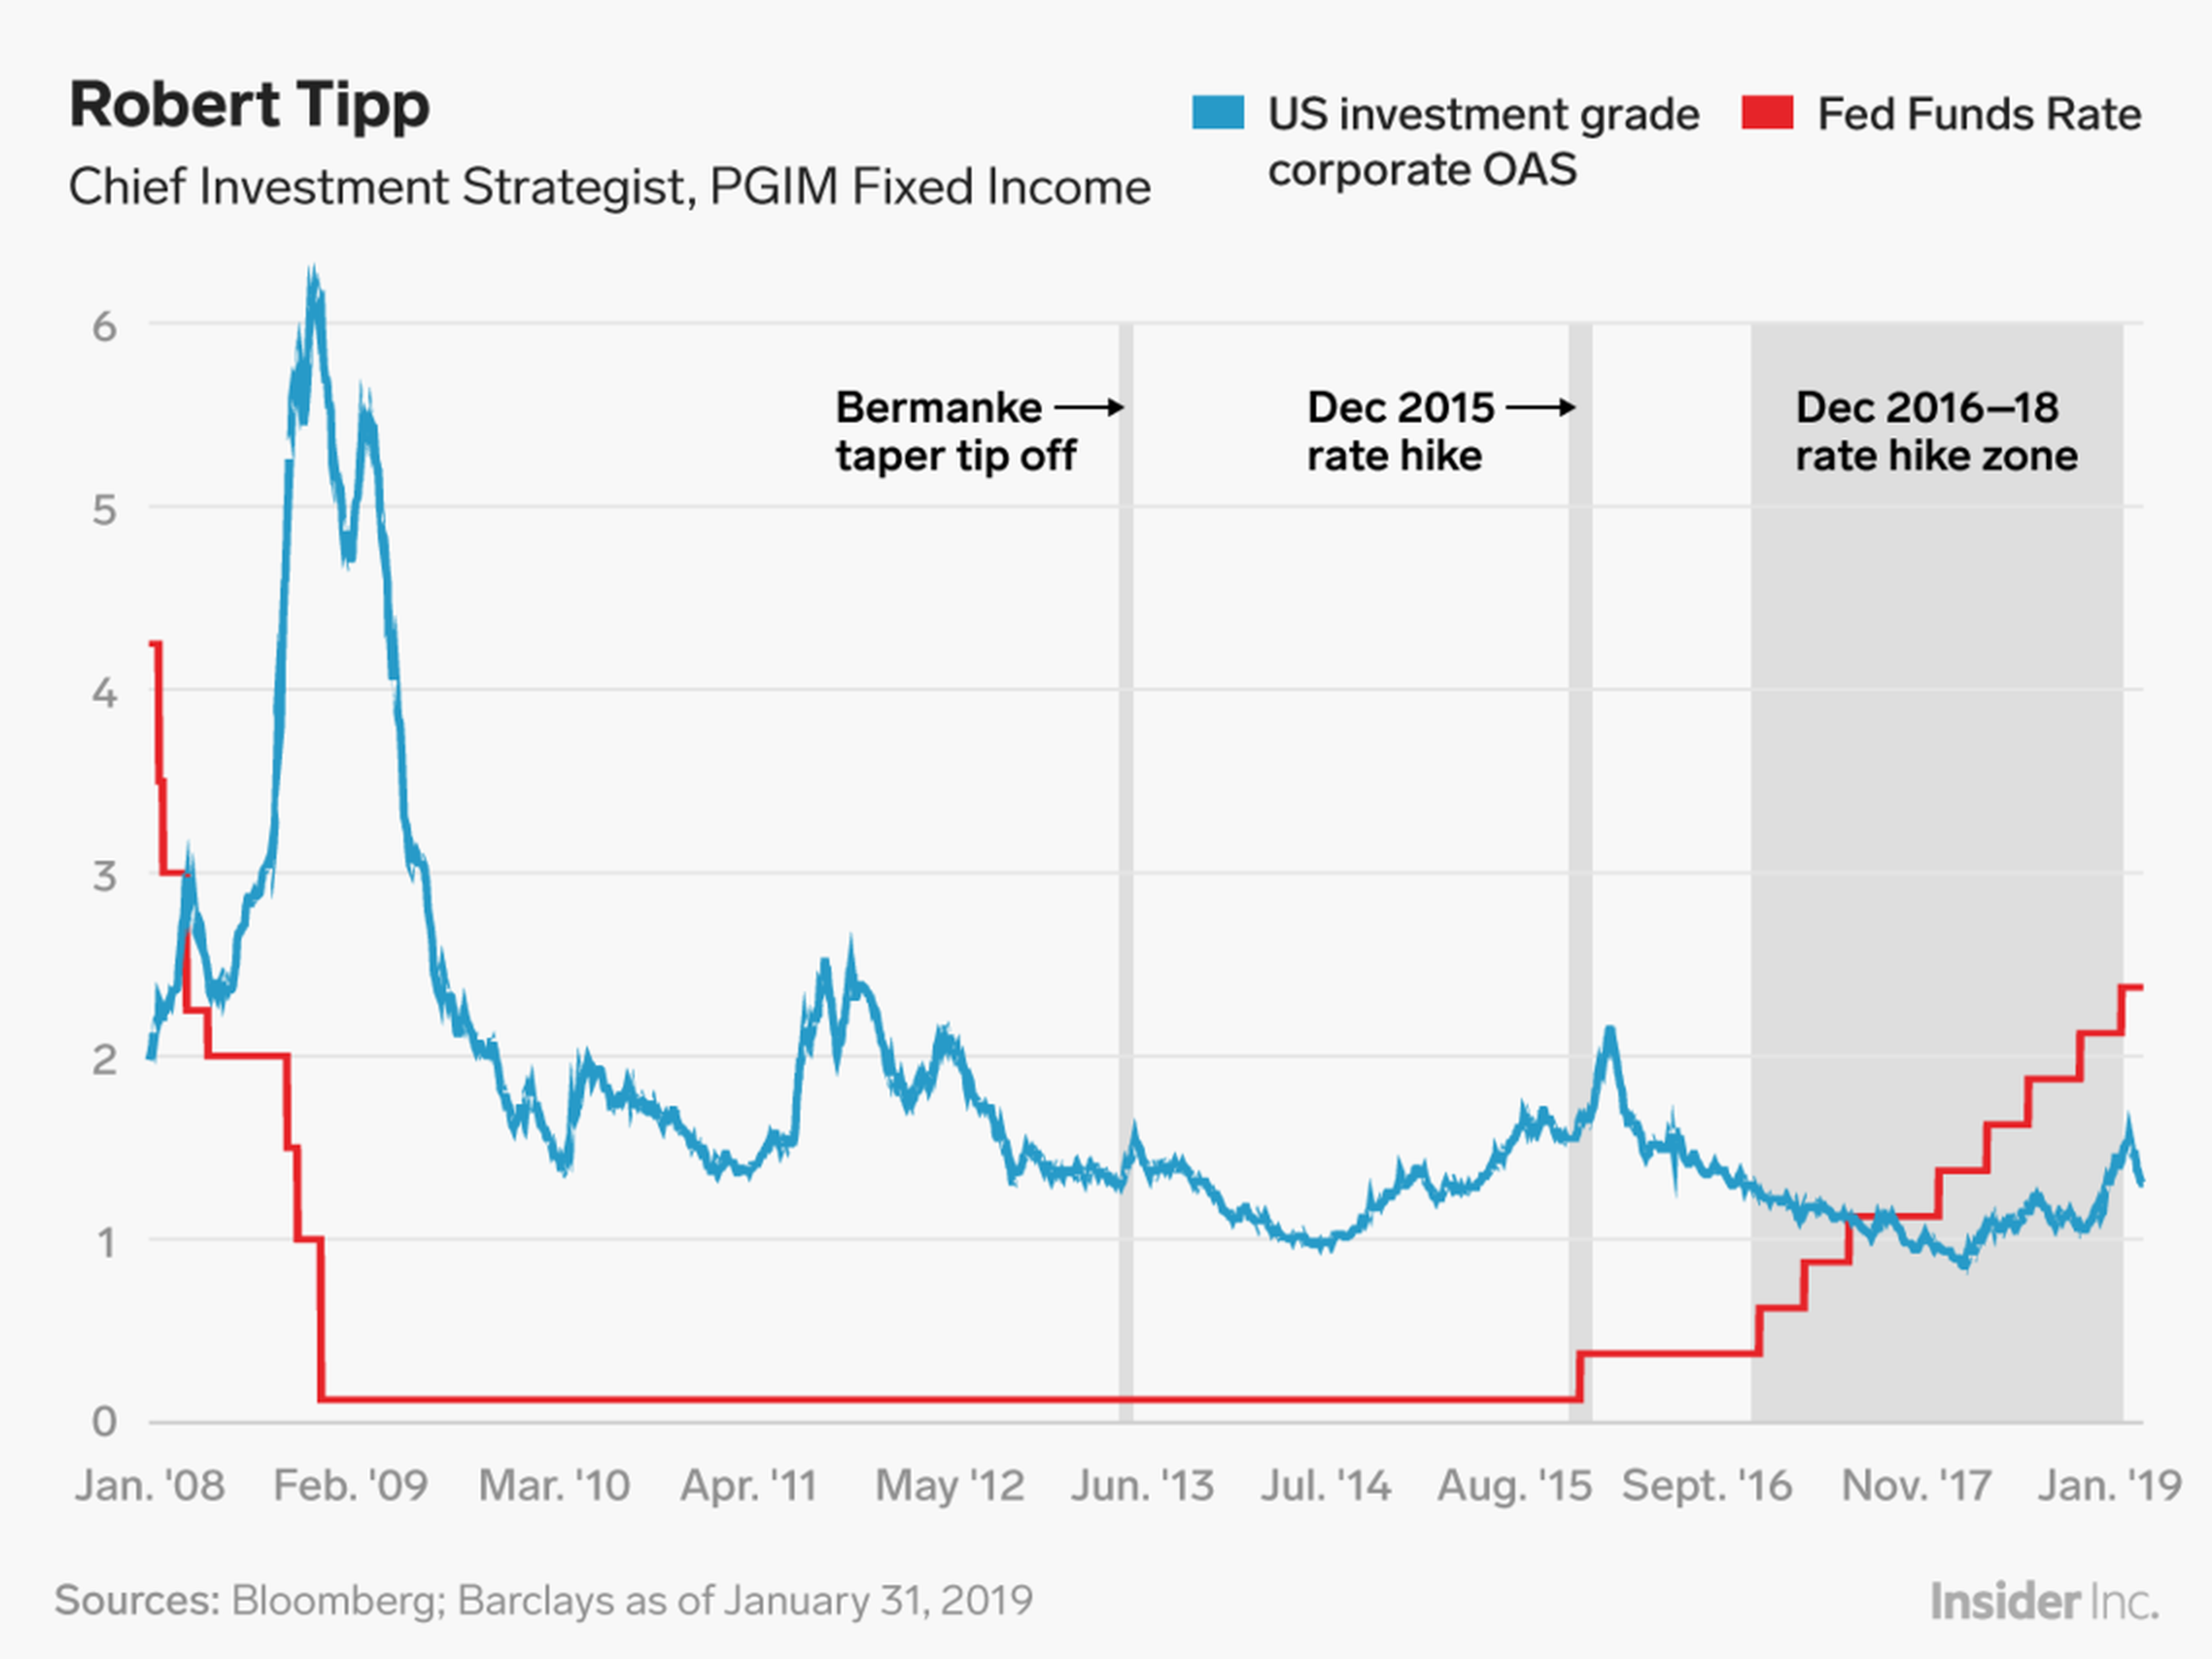 La Fed ha sido muy receptiva a los giros y vueltas del mercado